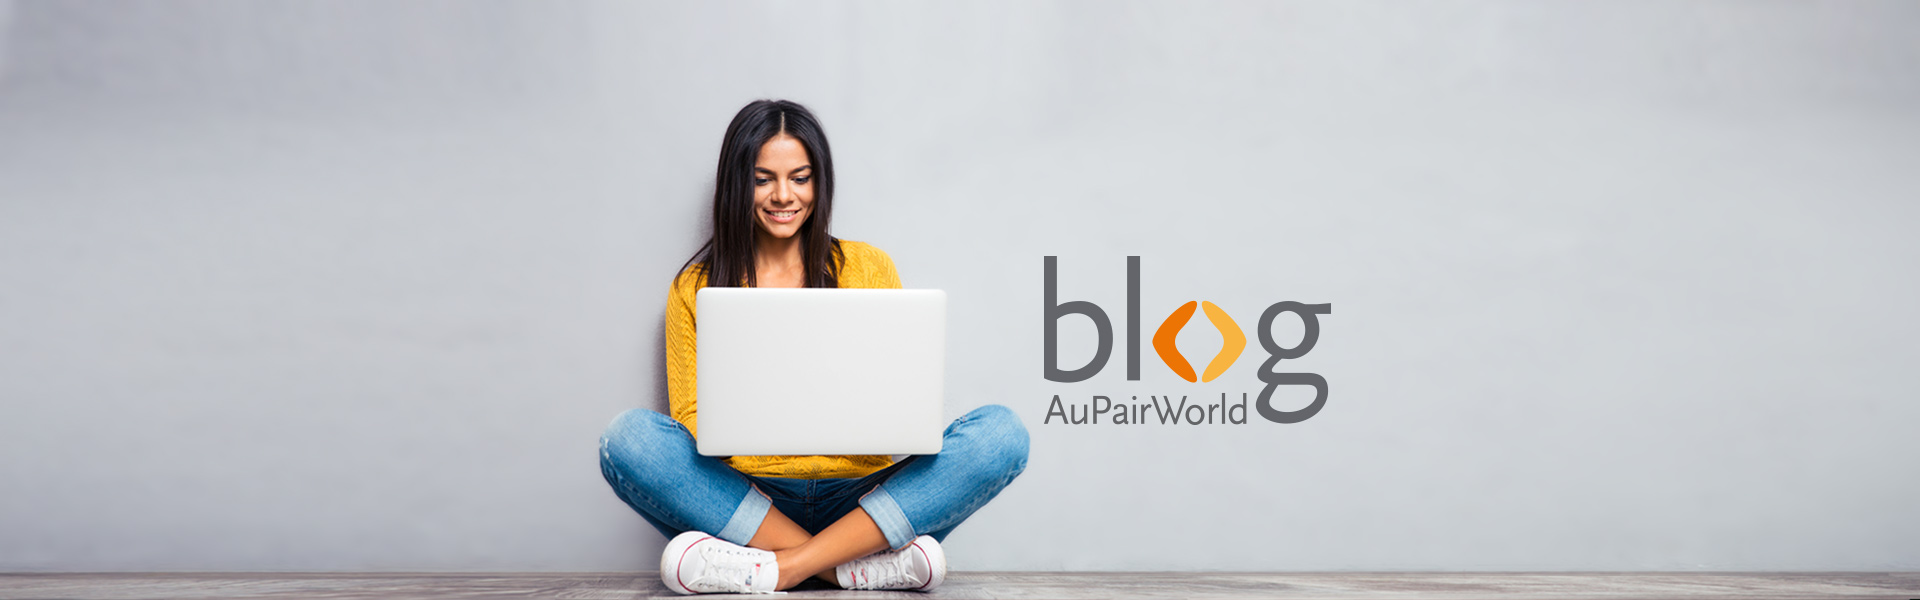 AuPairWorld Blog – Junge Frau mit Laptop